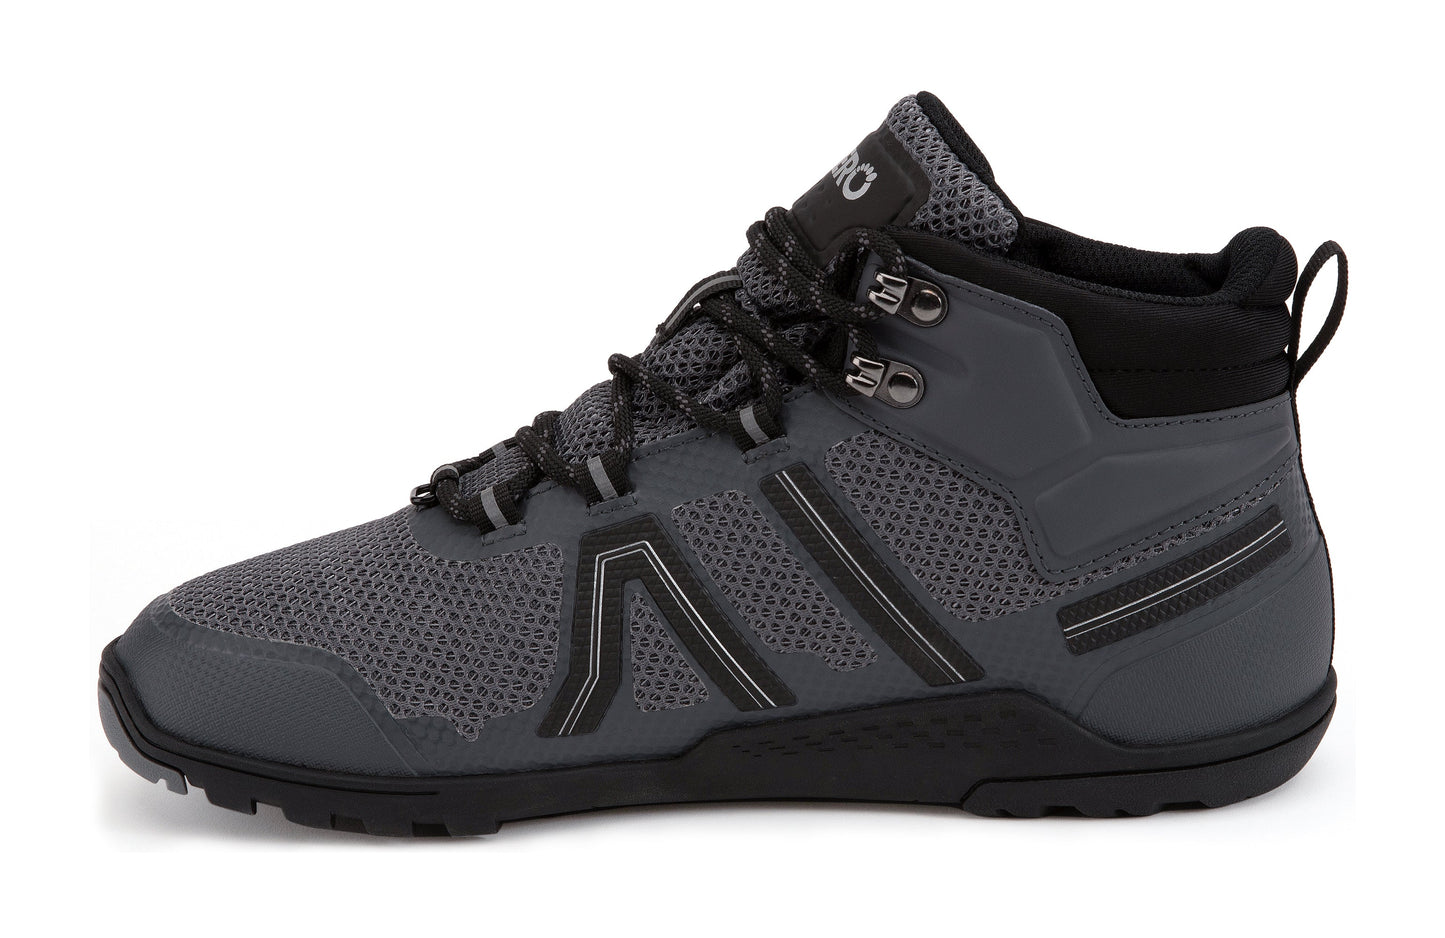 Xero Shoes Xcursion Fusion barfods støvler til mænd i farven asphalt, inderside